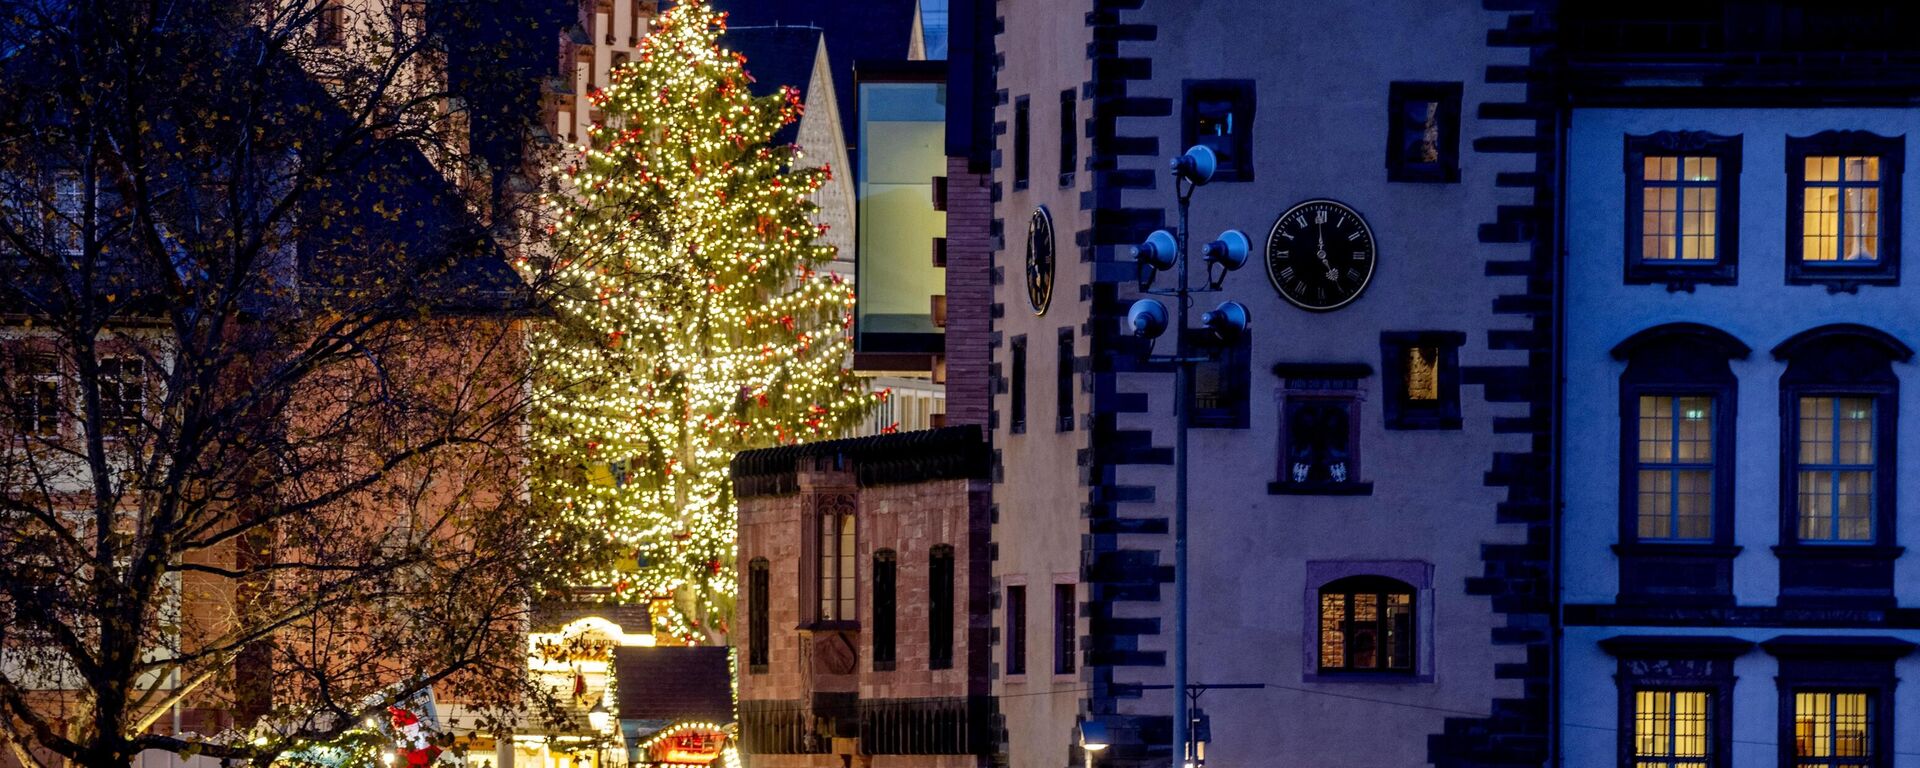 El árbol de Navidad iluminado en la feria navideña de Fráncfort, Alemania. - Sputnik Mundo, 1920, 22.12.2022